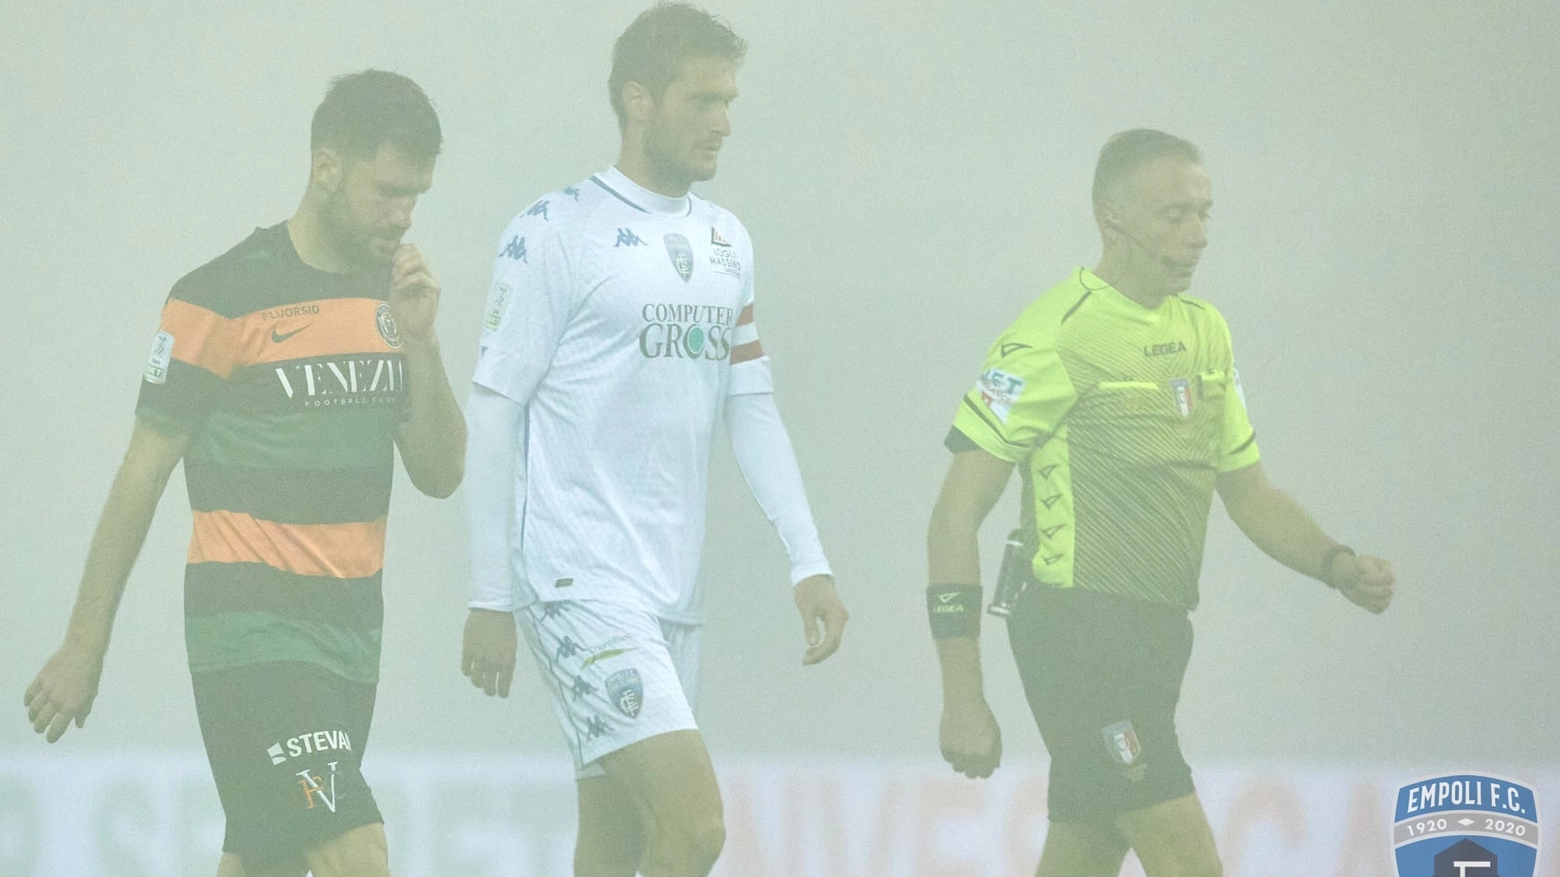 Nebbia allo stadio, Venezia-Empoli sospesa (Dal profilo Fb dell'Empoli)